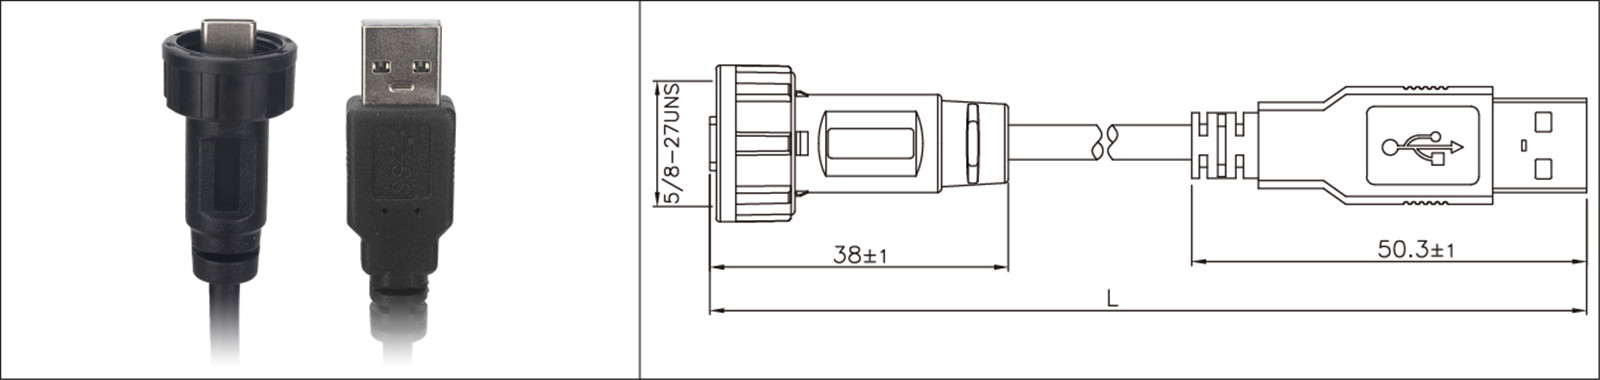 Крепление на панель Micro USB, тип 2.0 3.0, водонепроницаемый и водонепроницаемый удлинительный кабель IP67, промышленный разъем-02 (6)